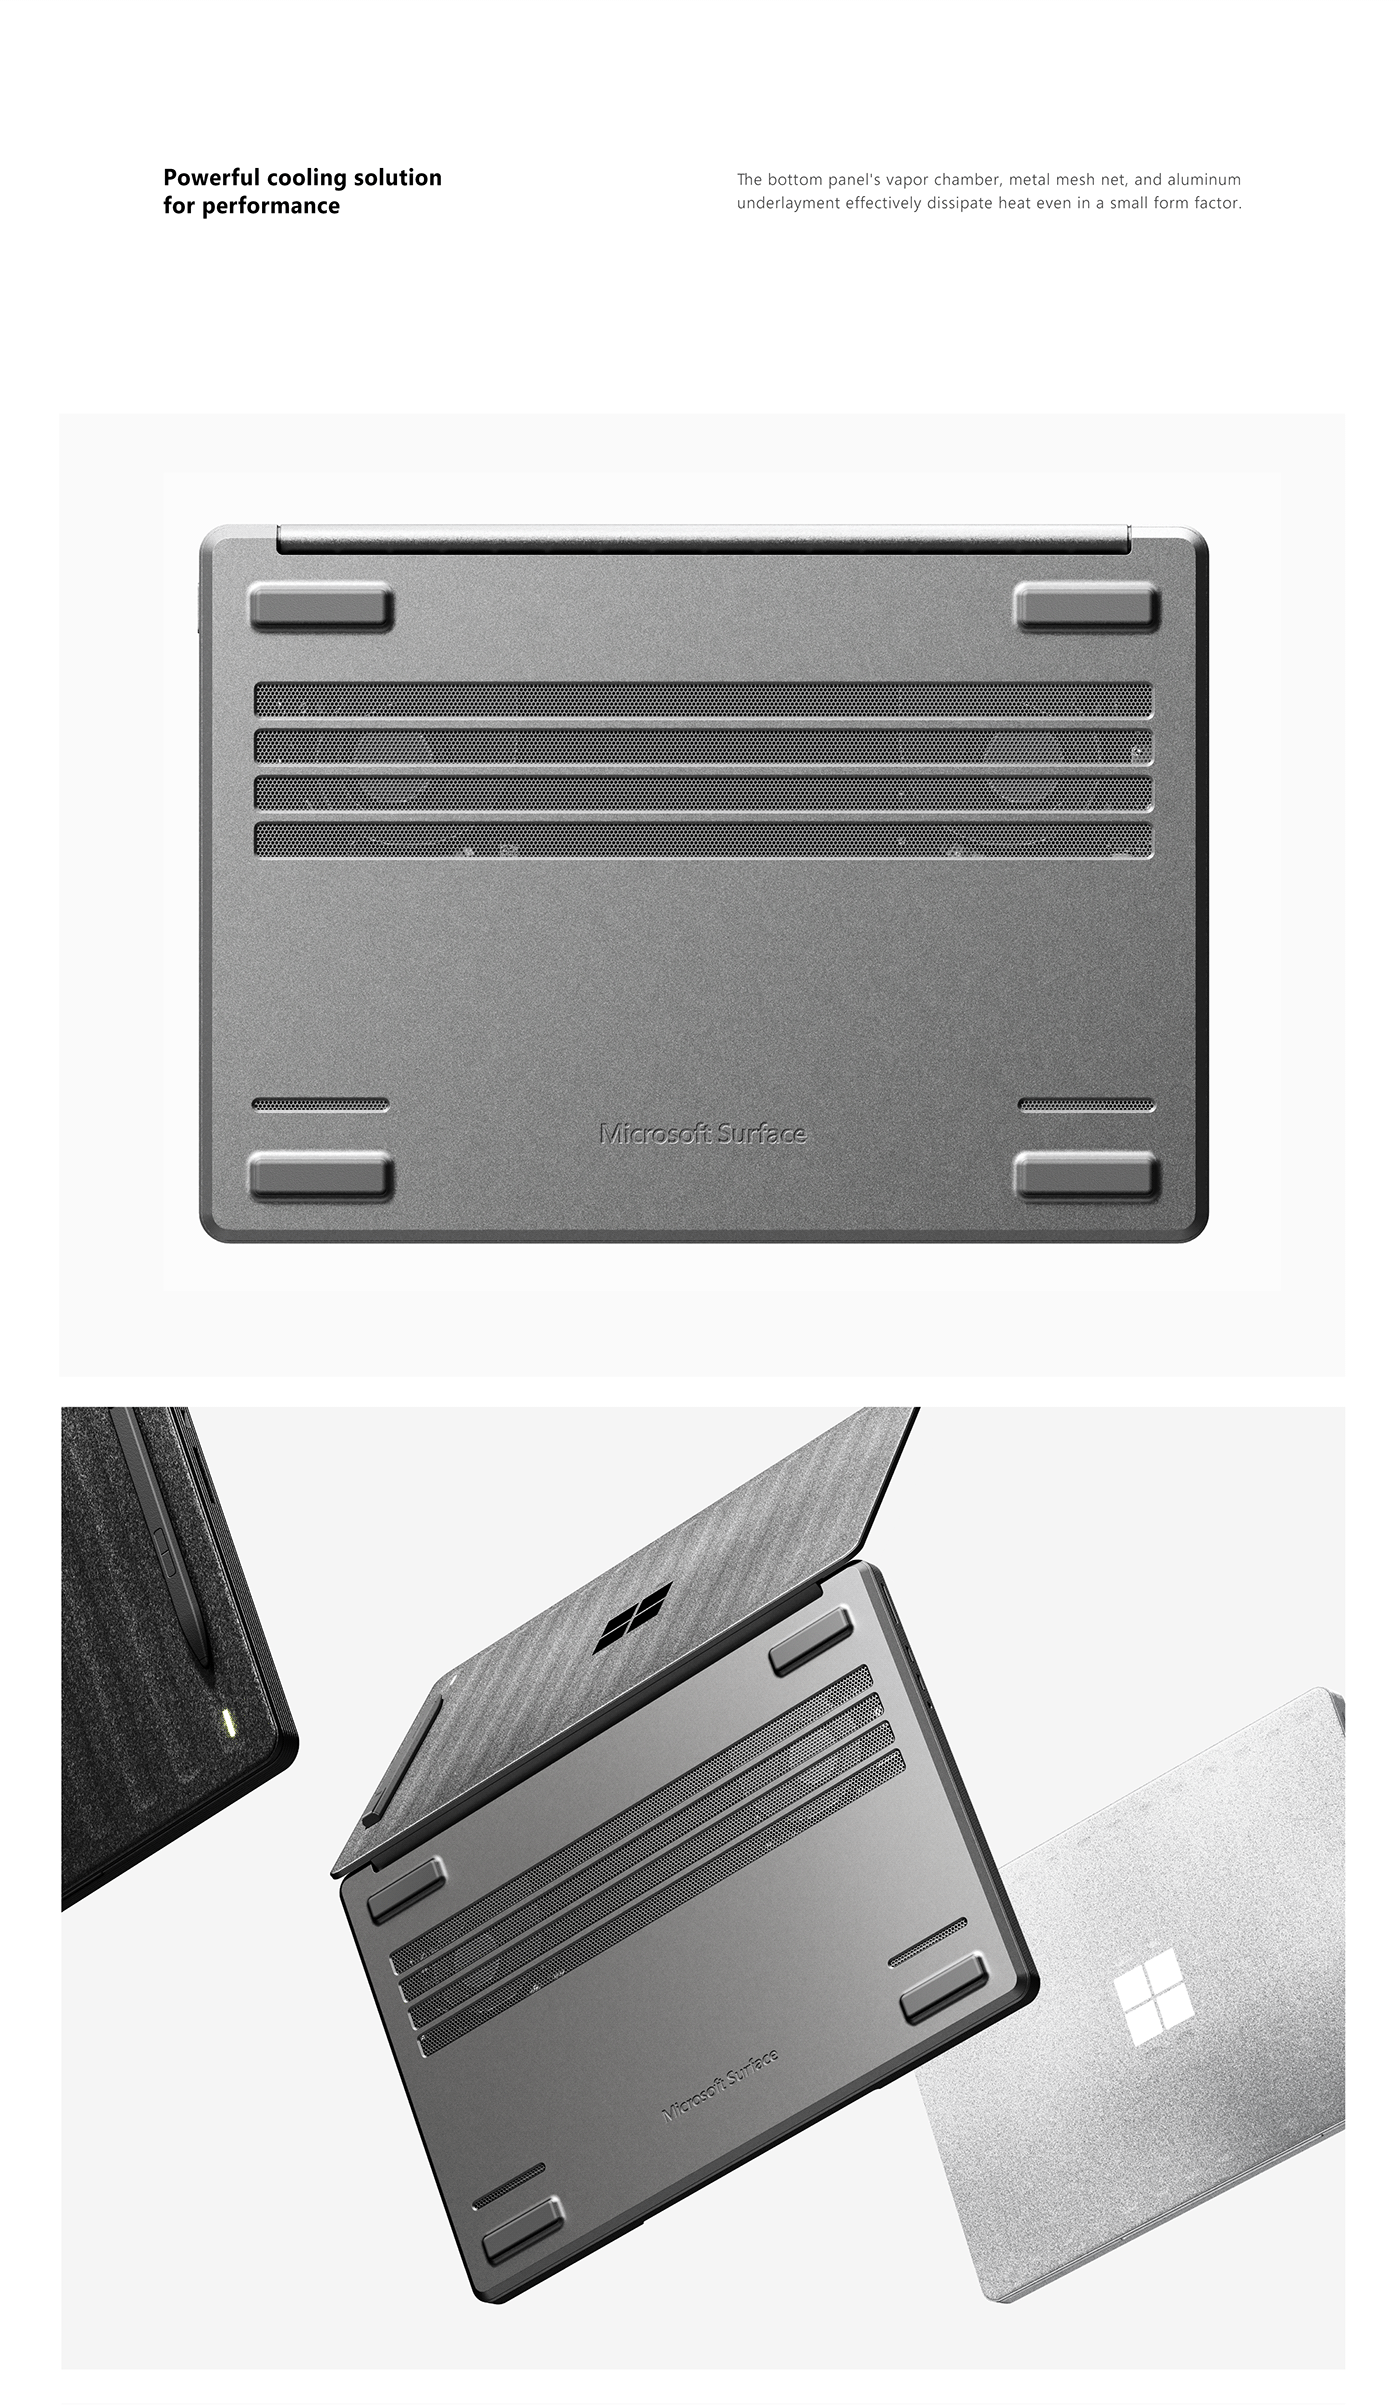 product design  industrial design  Microsoft surface Laptop desktop workstation keyshot concept rendering